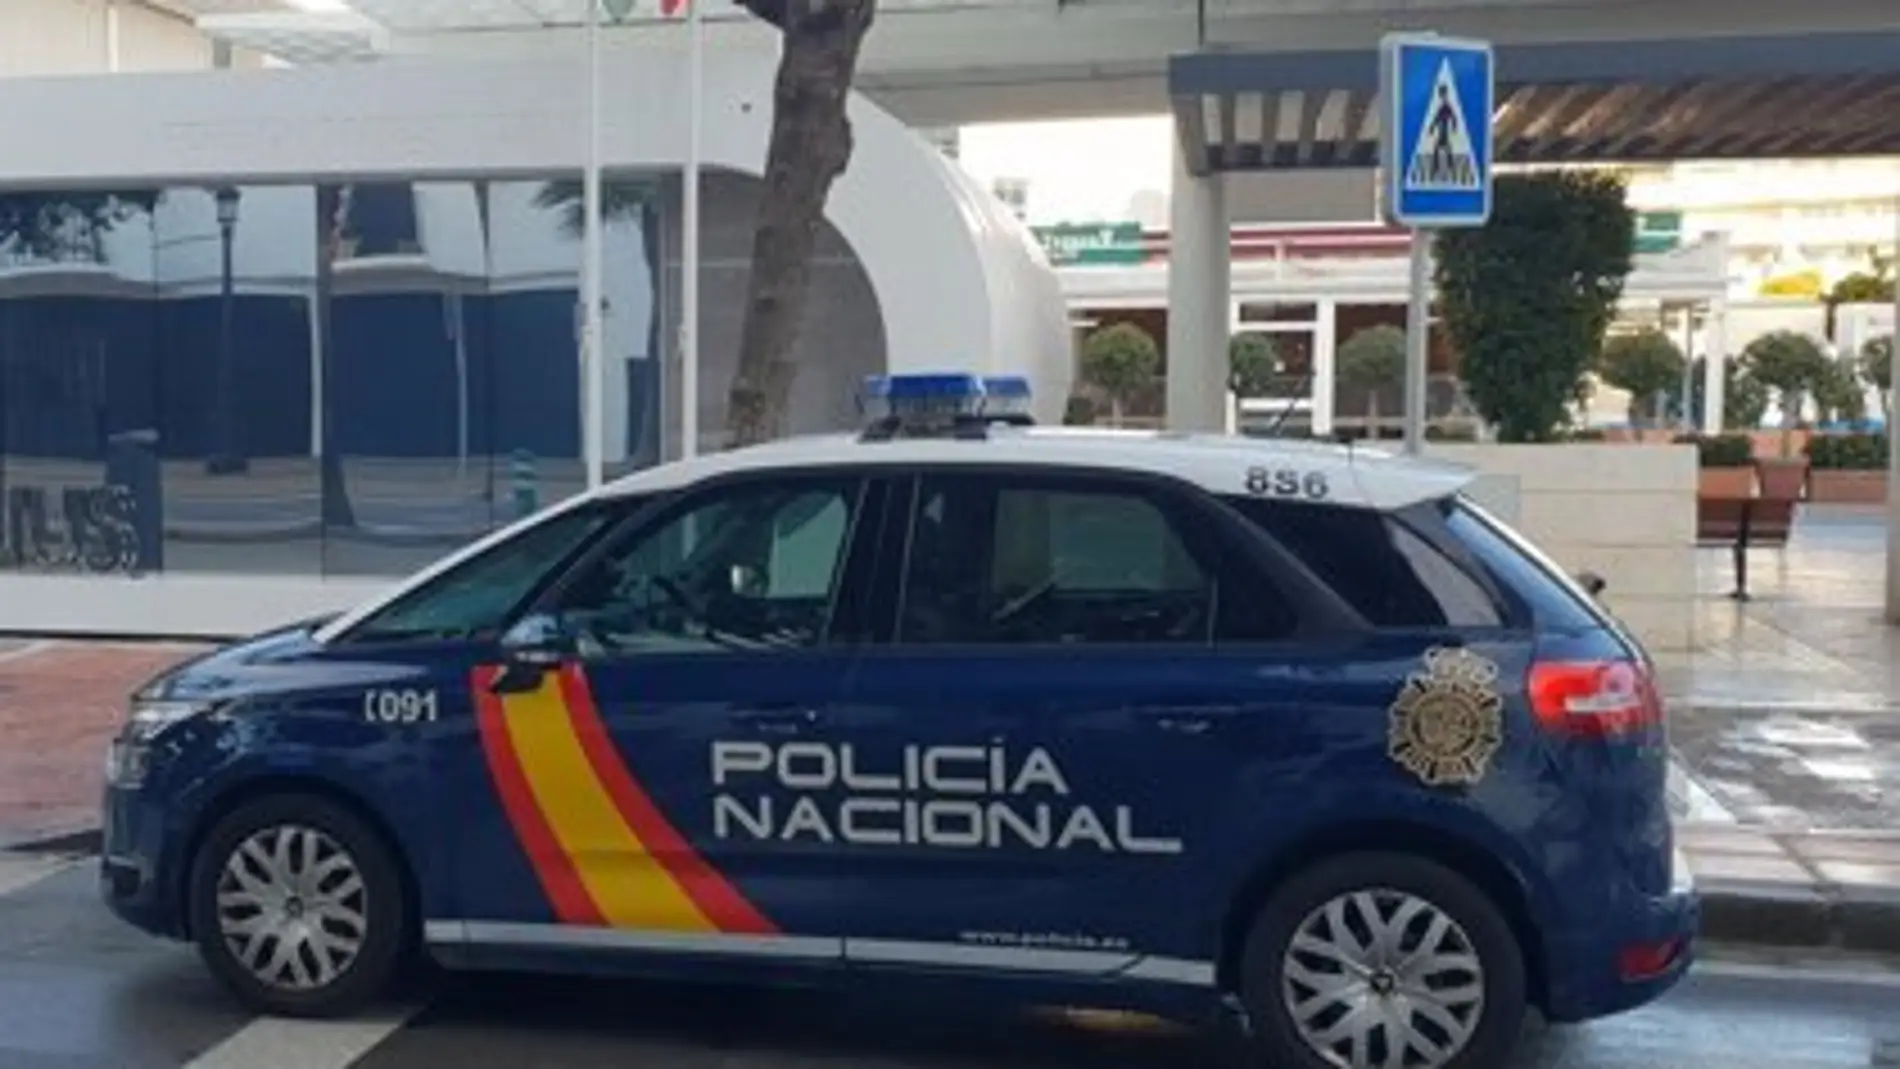 Vehículo de la Policía Nacional